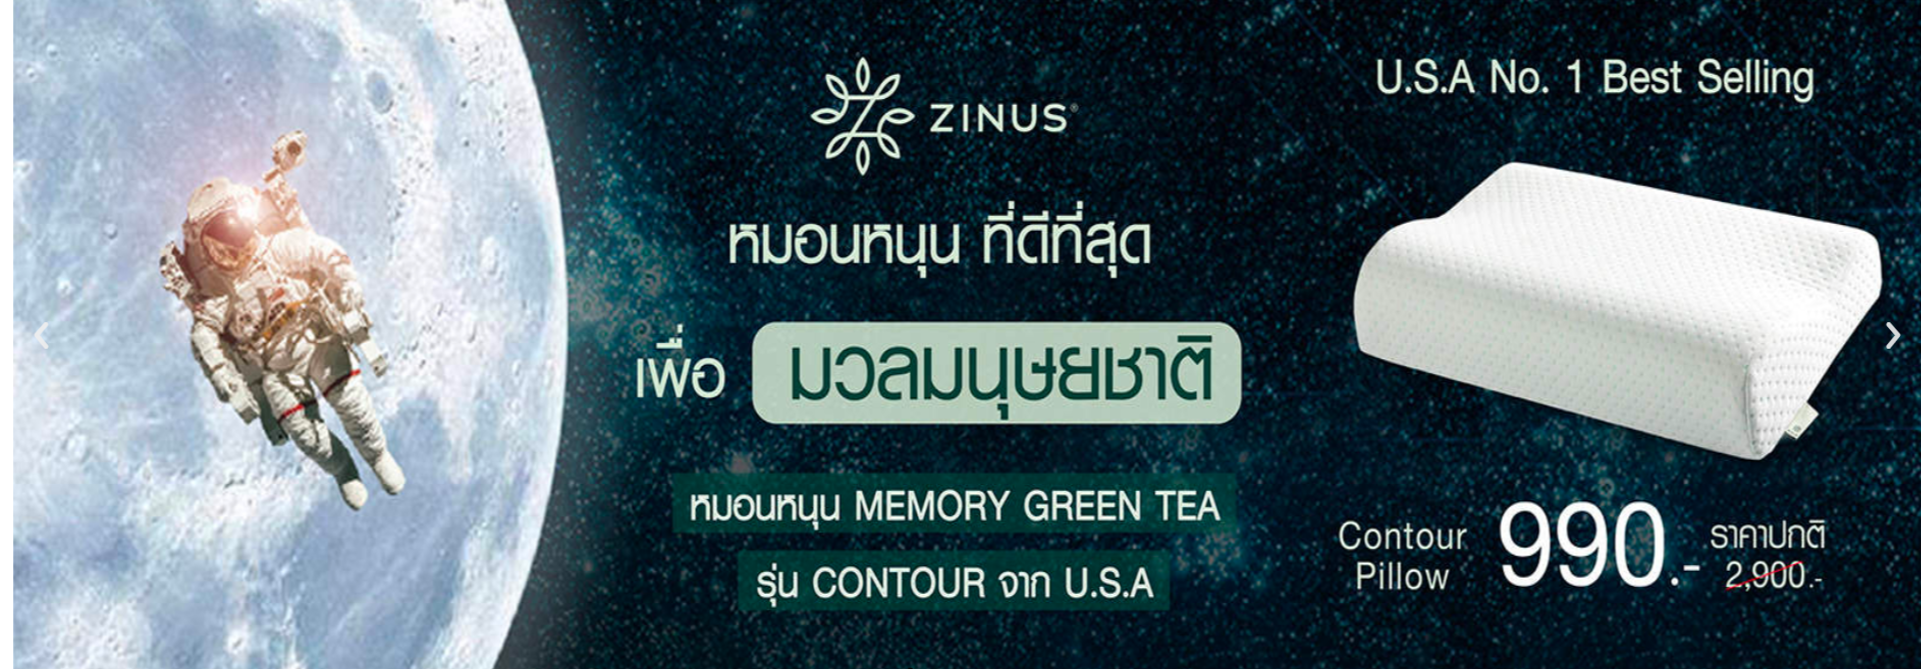 ซีนุส เปิดตัวหมอนหนุน Memory Green Tea รุ่น Contour  ผสานเข้ากับเทคโนโลยีจาก NASA นำเข้าจากประเทศสหรัฐอเมริกา